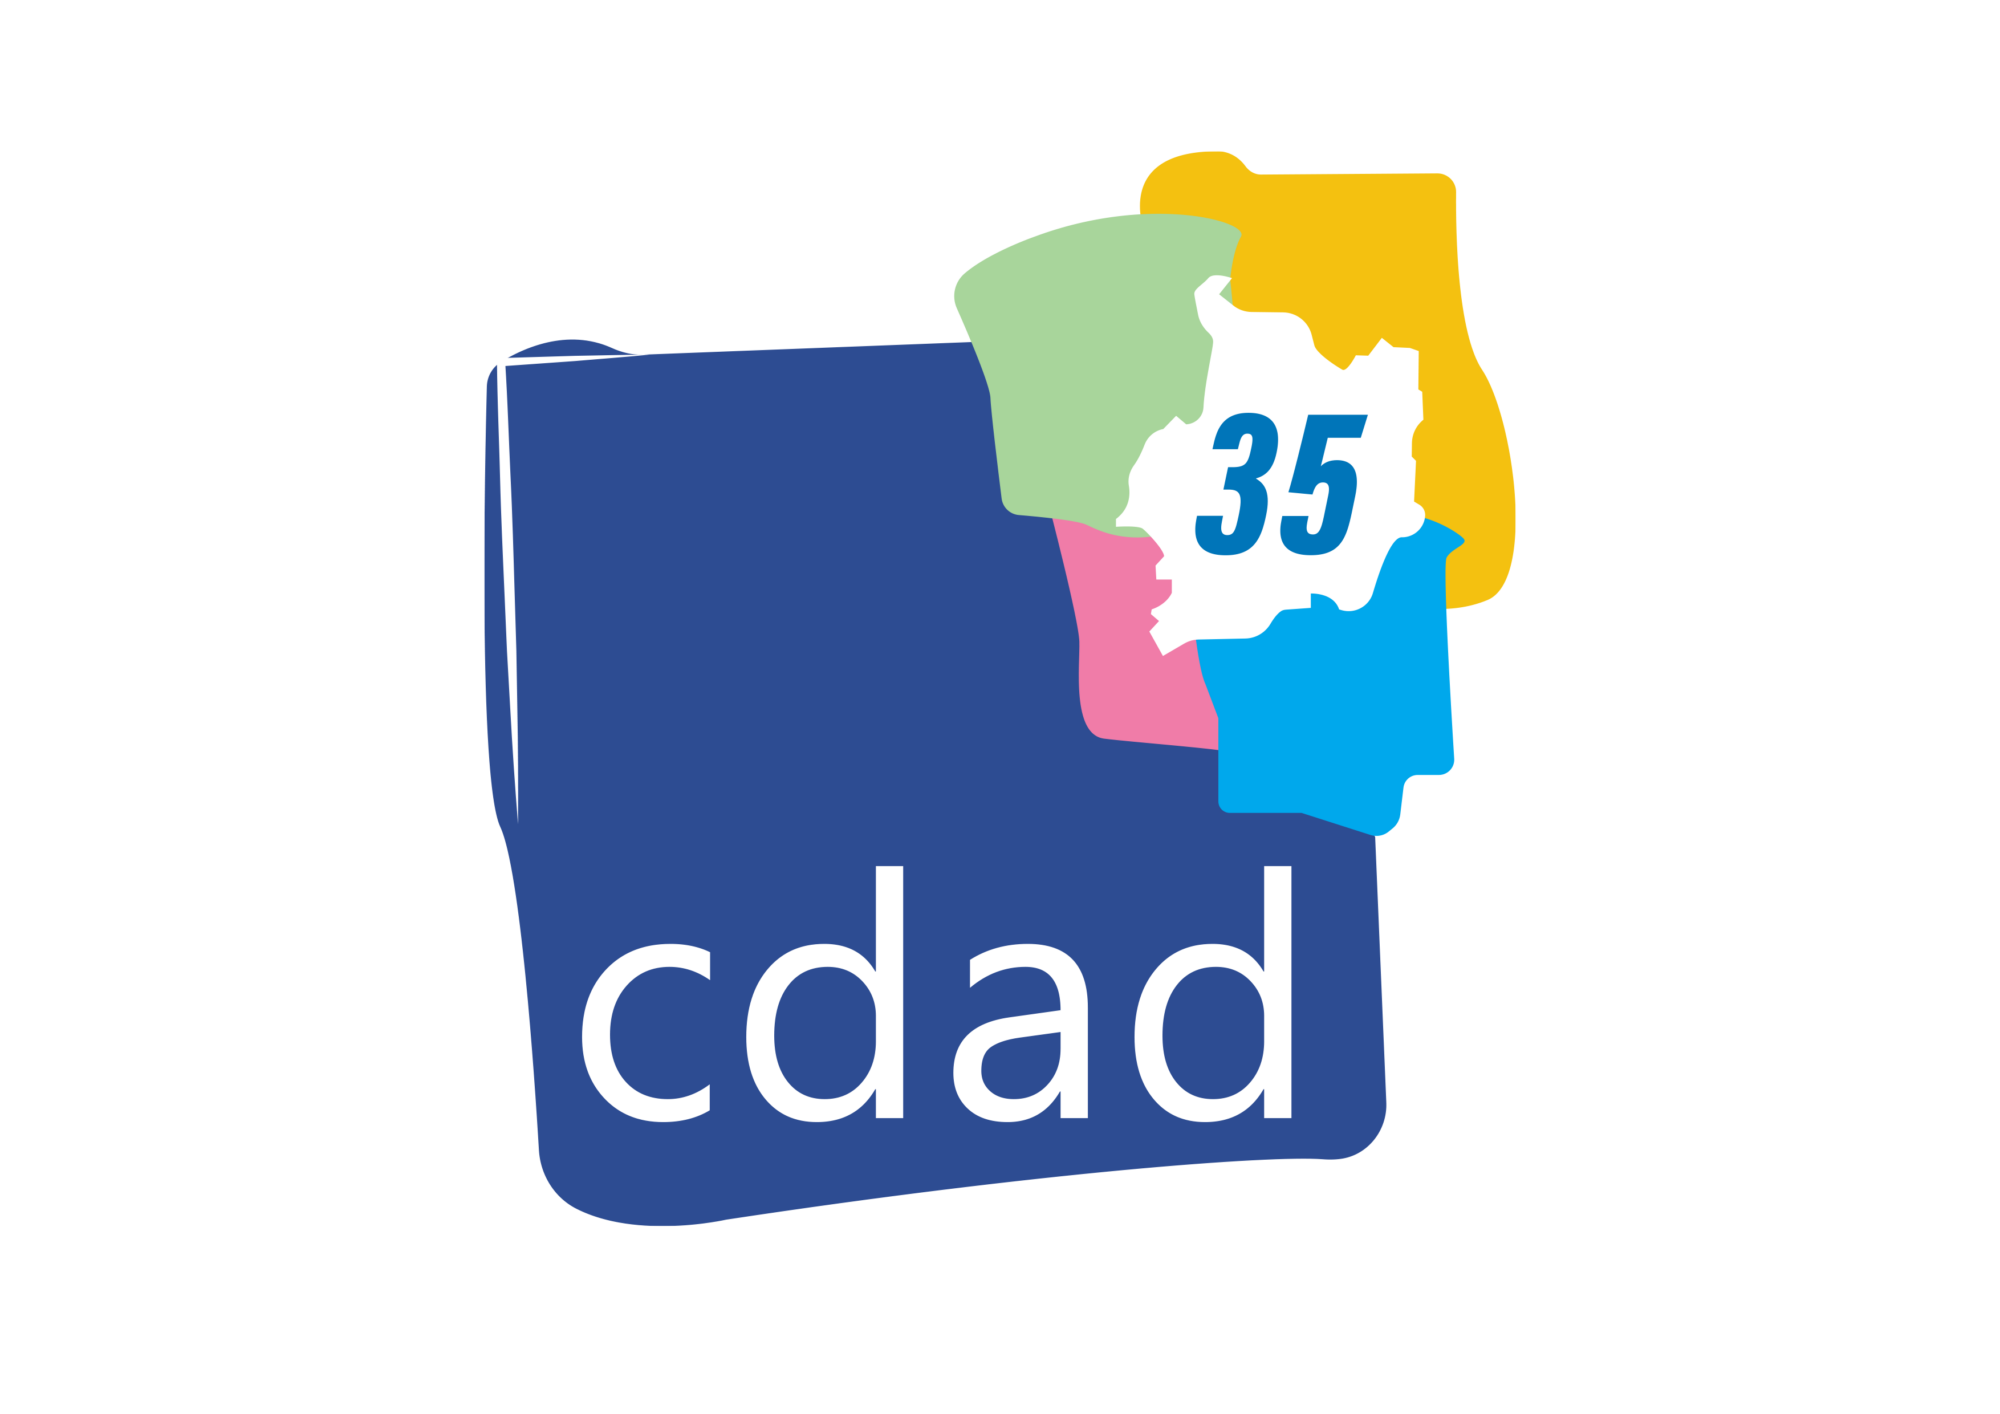 CDAD 35